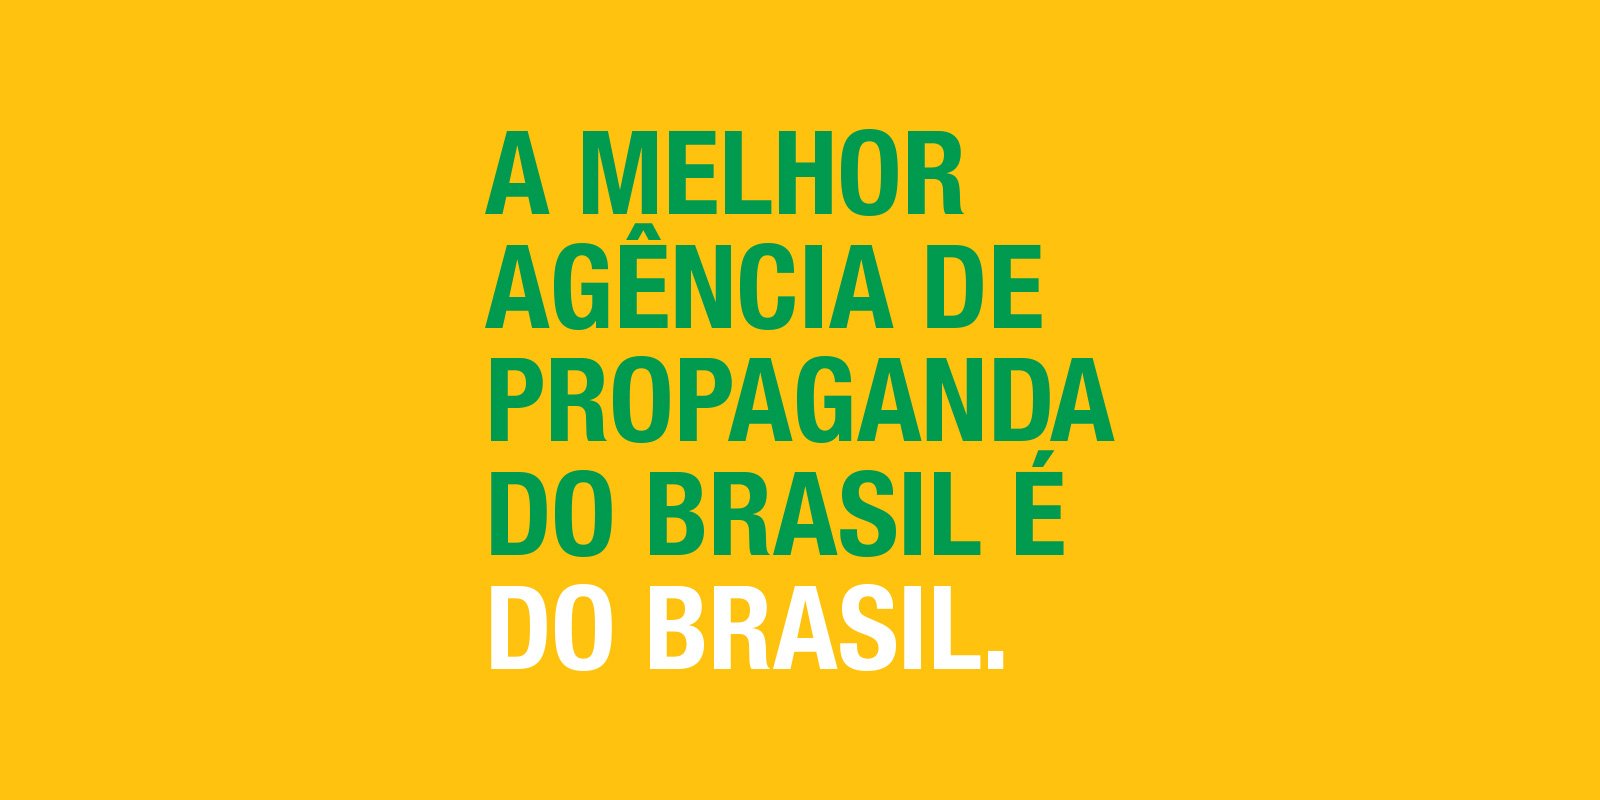 Featured image for “A melhor do Brasil”